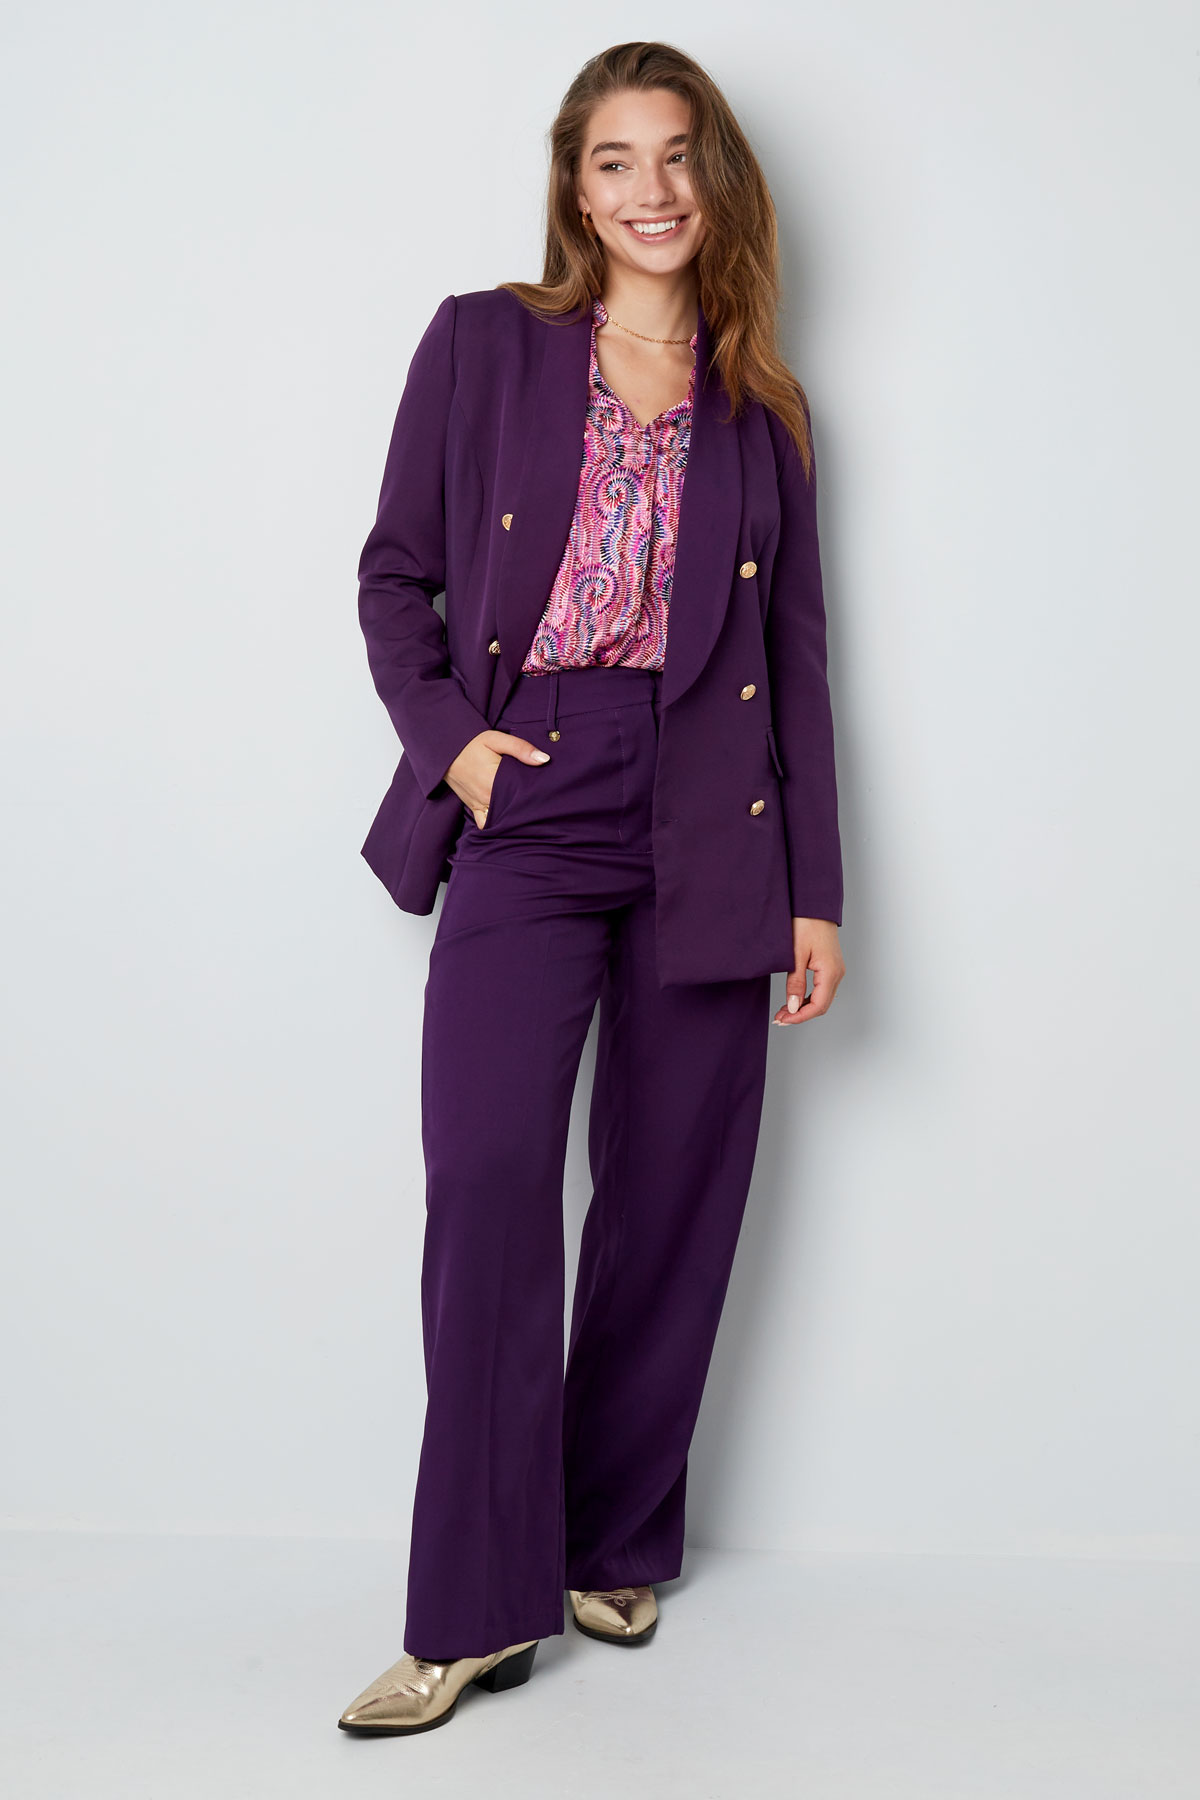 Pantalón plisado - violeta h5 Imagen6